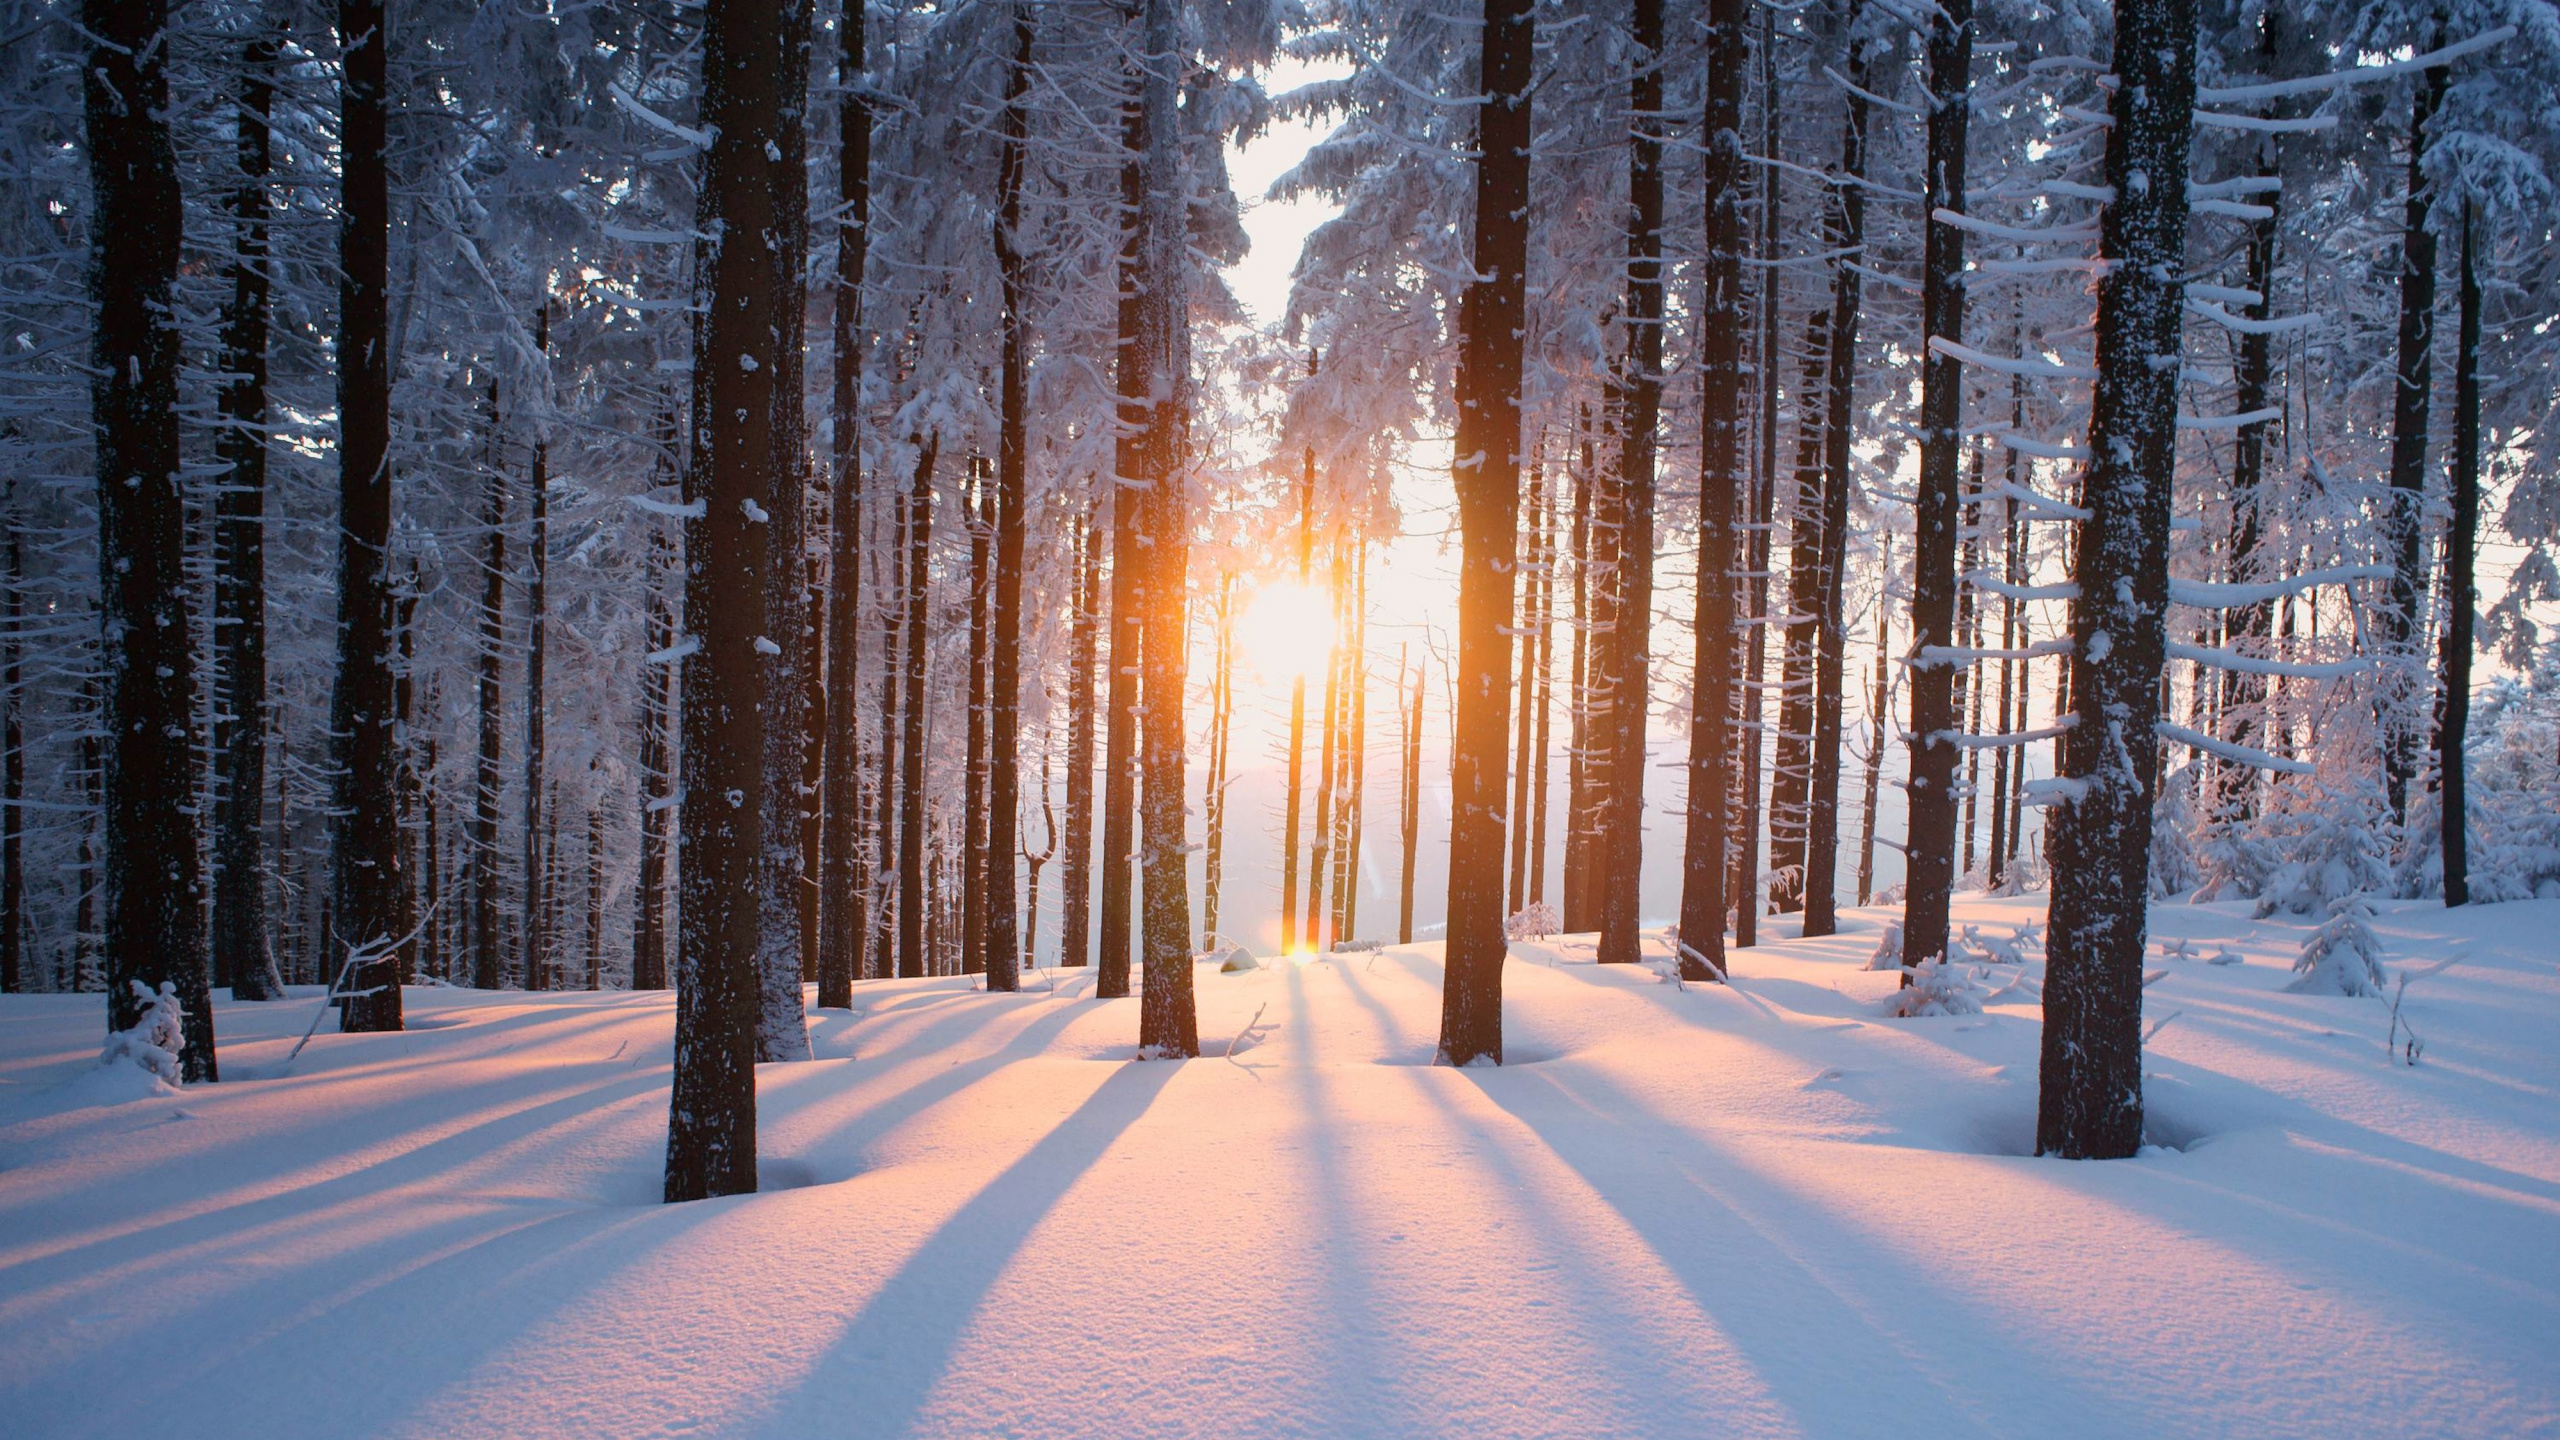 冬天, 性质, 森林, 冻结, 寒冬森林 壁纸 2560x1440 允许